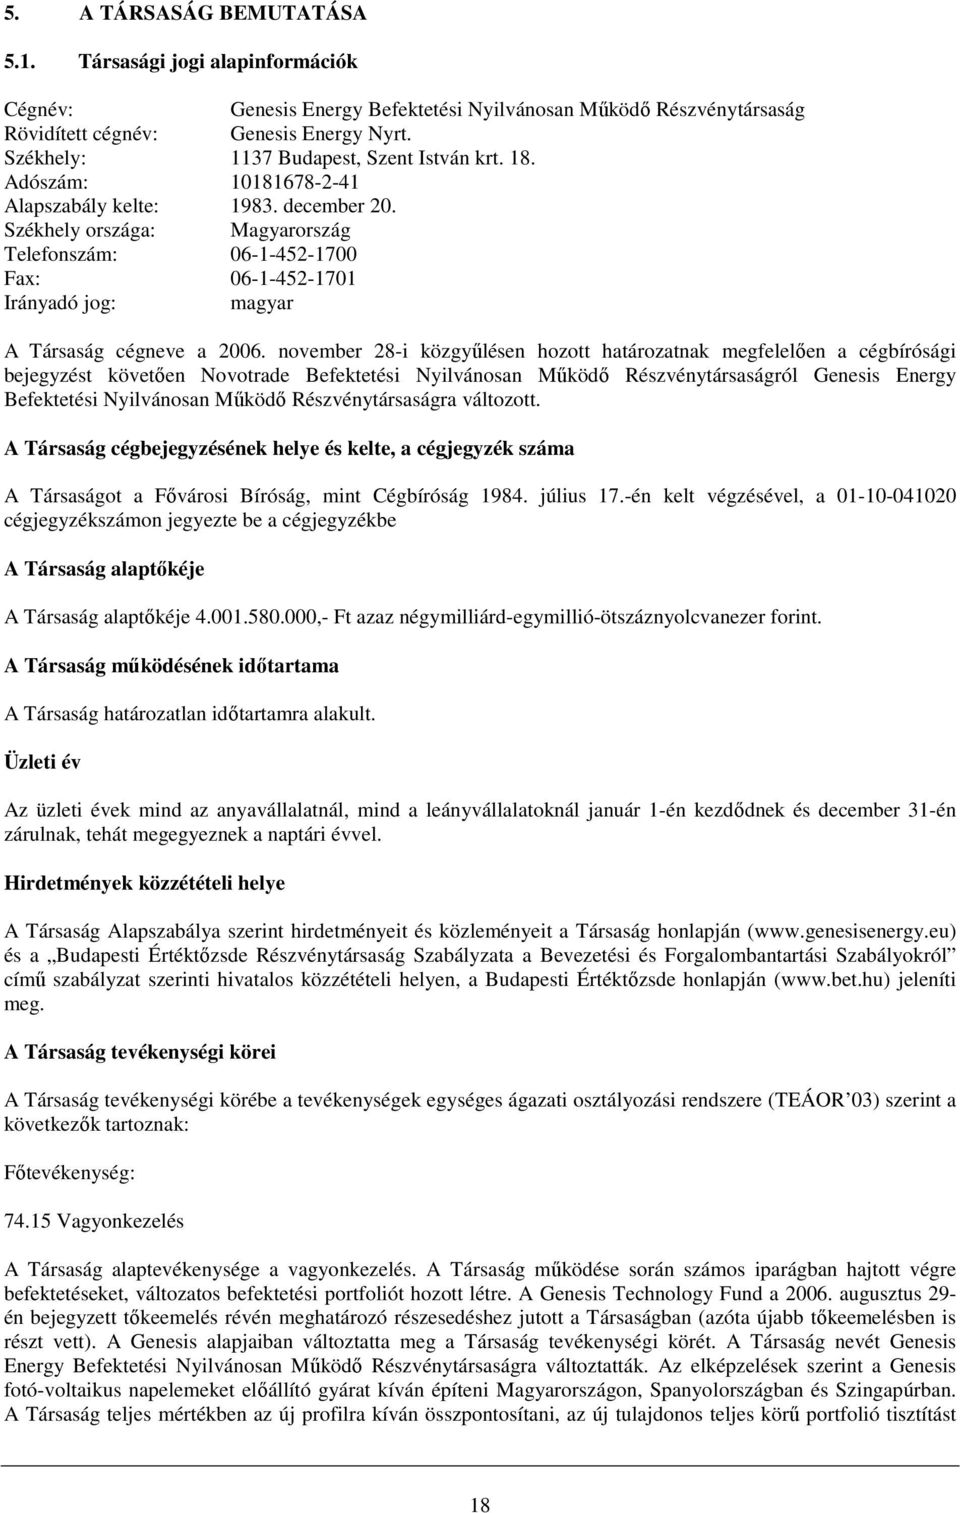 Székhely országa: Magyarország Telefonszám: 06-1-452-1700 Fax: 06-1-452-1701 Irányadó jog: magyar A Társaság cégneve a 2006.